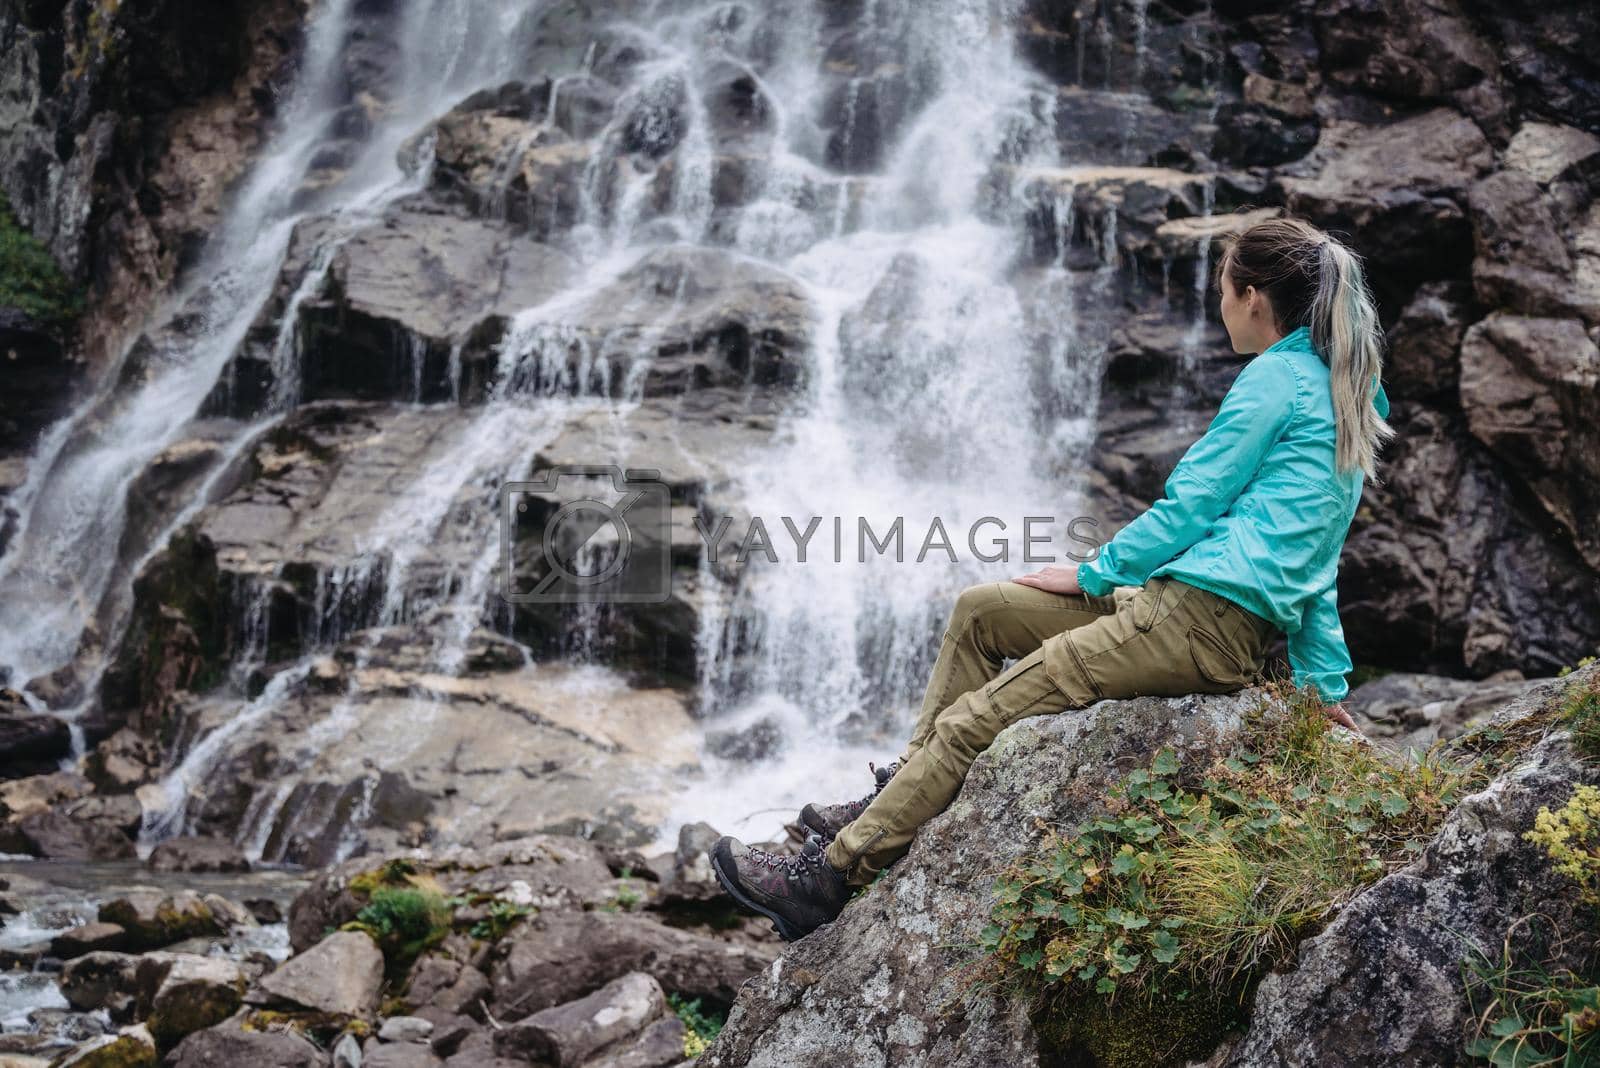 Royalty free image of Woman enjoying view of waterfall by alexAleksei